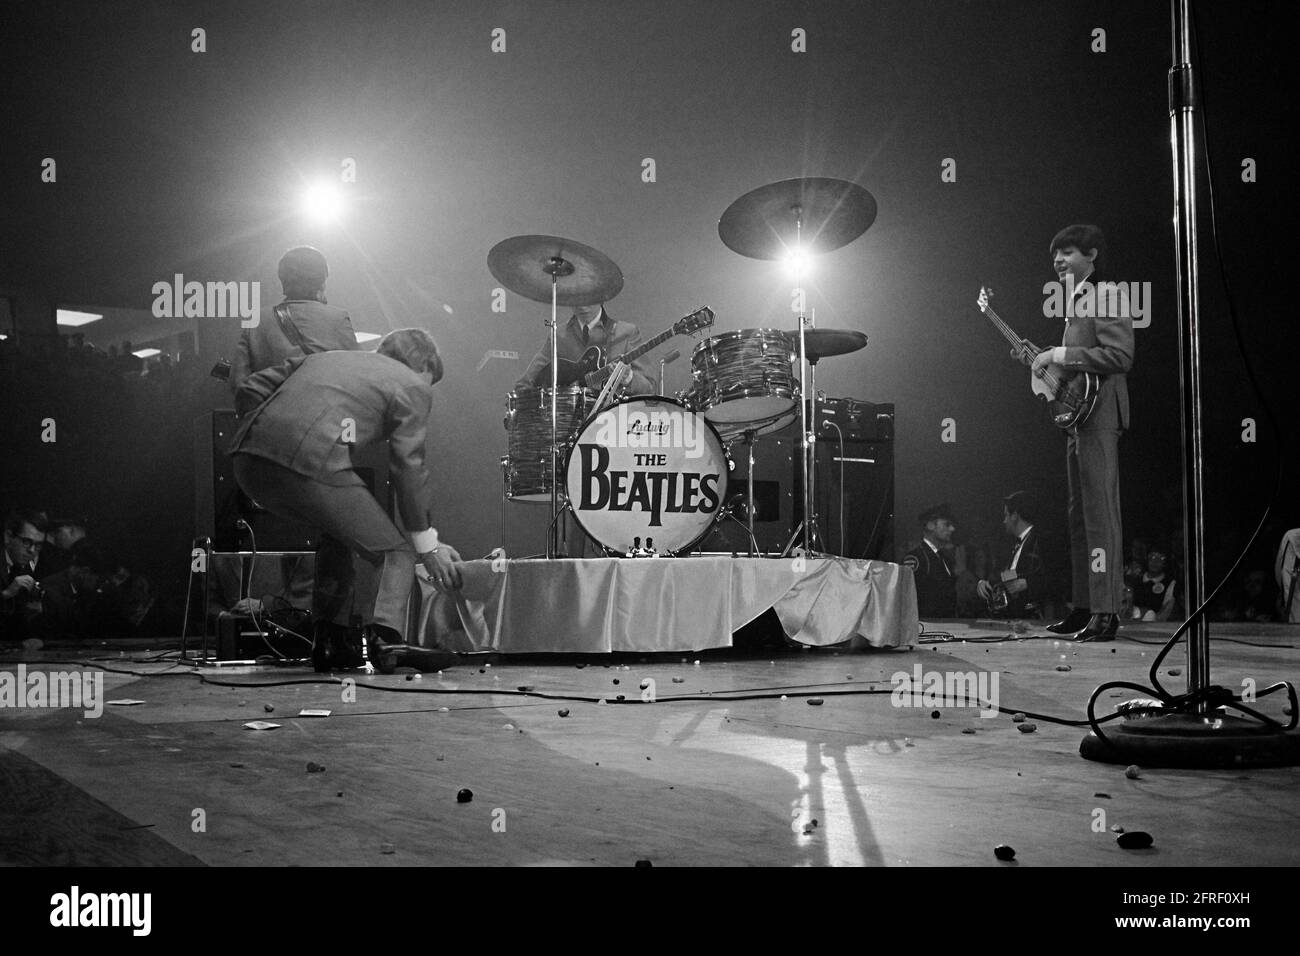 Les Beatles se présentant au Washington Coliseum lors de leur premier concert américain le 11 février 1964. La scène est jonchée de jelly beans de fans qui ont pelé le groupe avec eux après qu'un journal de New York a rapporté le groupe discutant d'un comme pour eux. (ÉTATS-UNIS) Banque D'Images